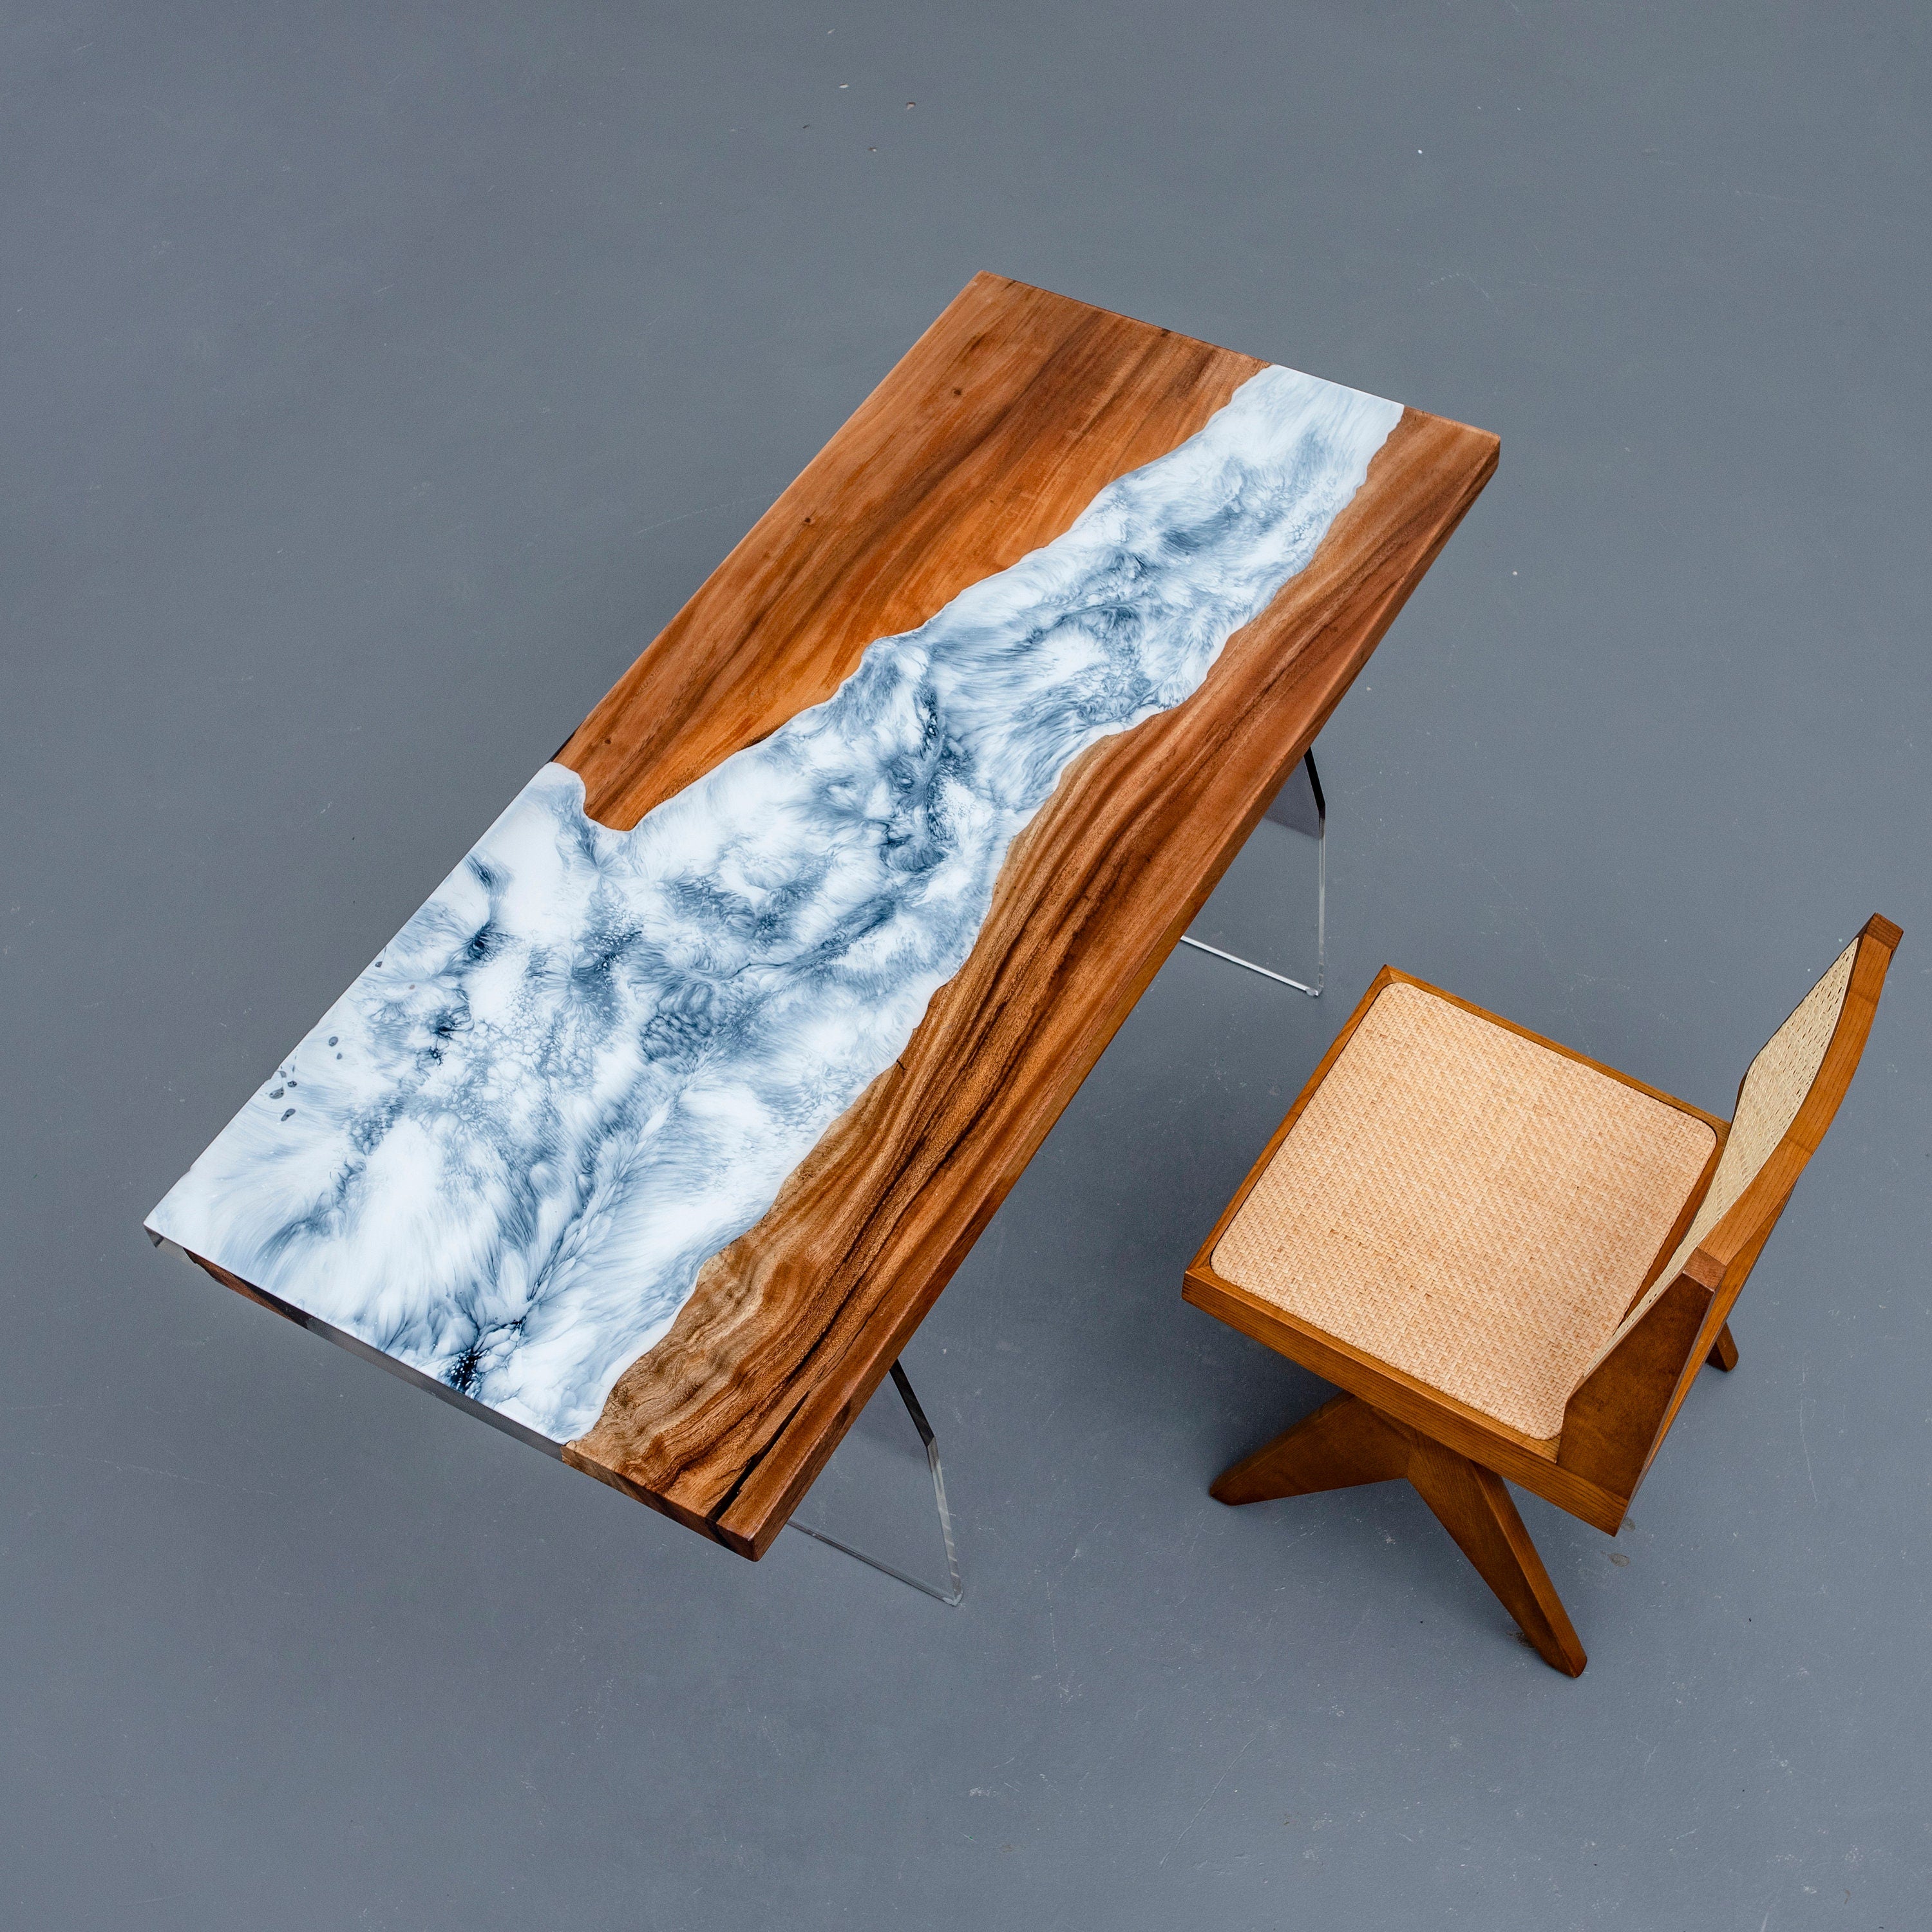 スノーフレークエポキシテーブル、ホワイトエポキシ樹脂テーブル、スノーダイニングテーブル、天然木テーブル